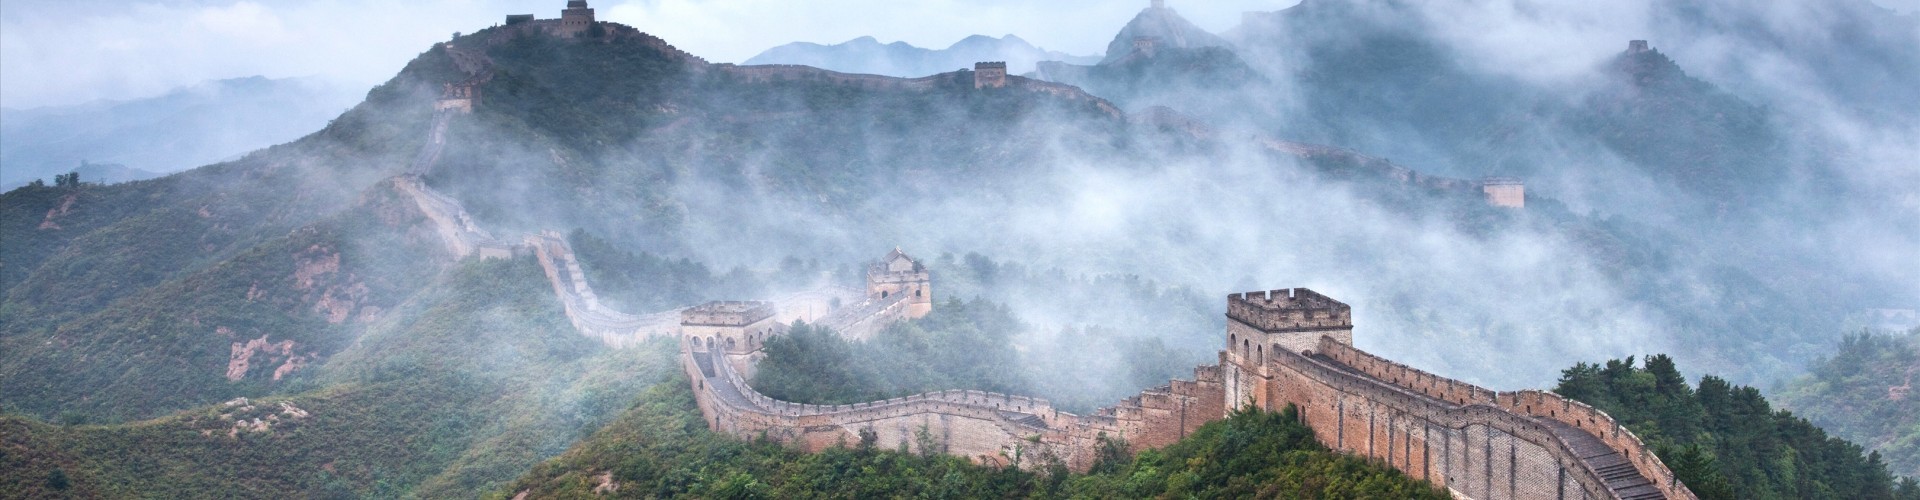 1 Day Badaling Great Wall Bus Tour